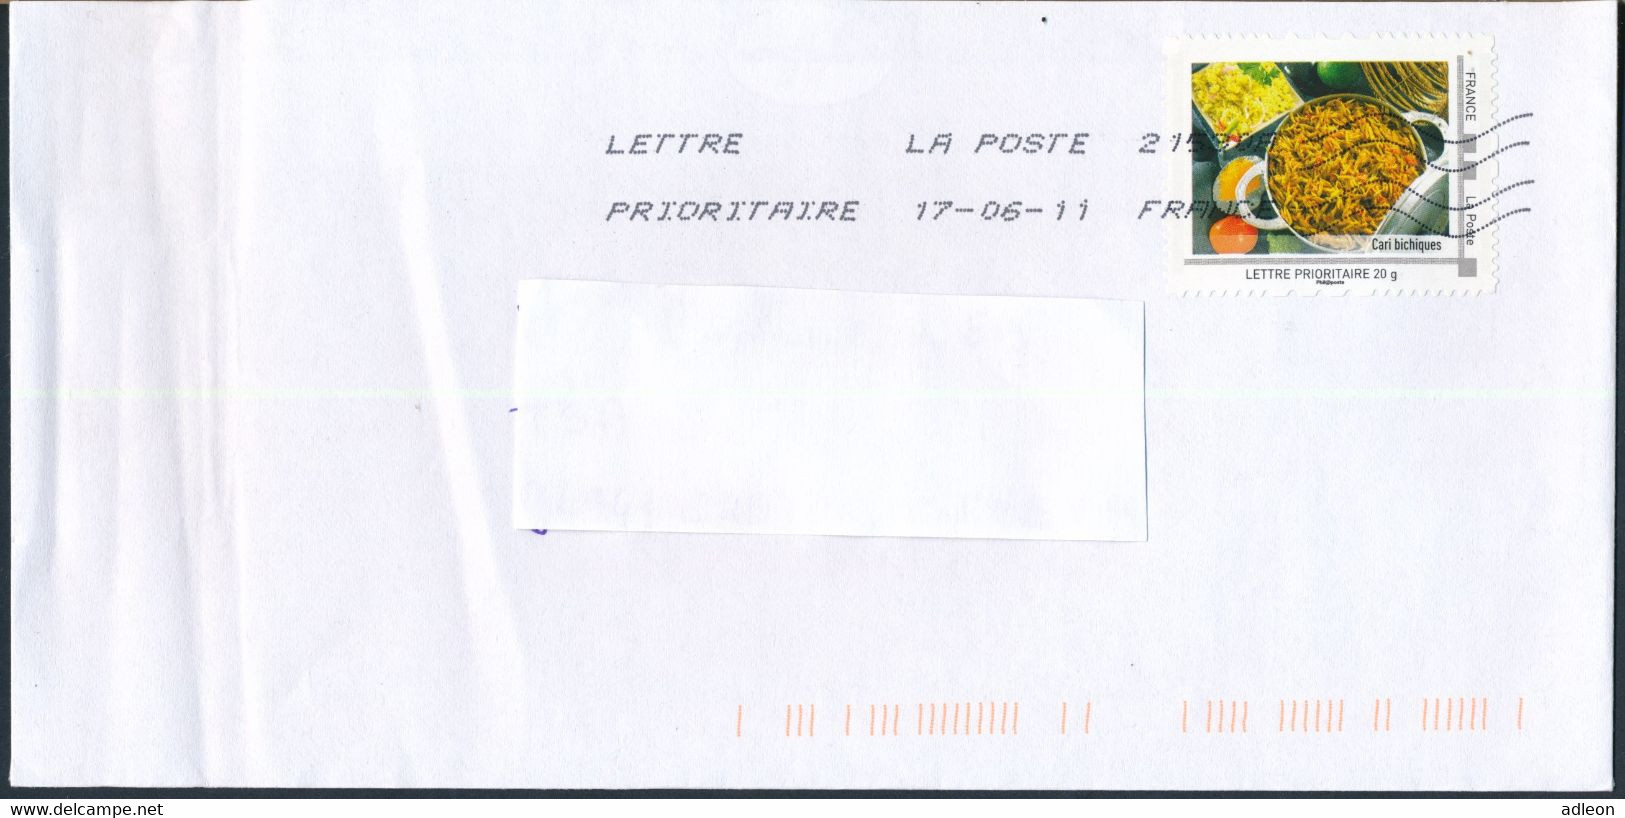 France-IDTimbres - Cari Bichiques - YT IDT 7 Sur Lettre Du 17-06-2011 - Covers & Documents